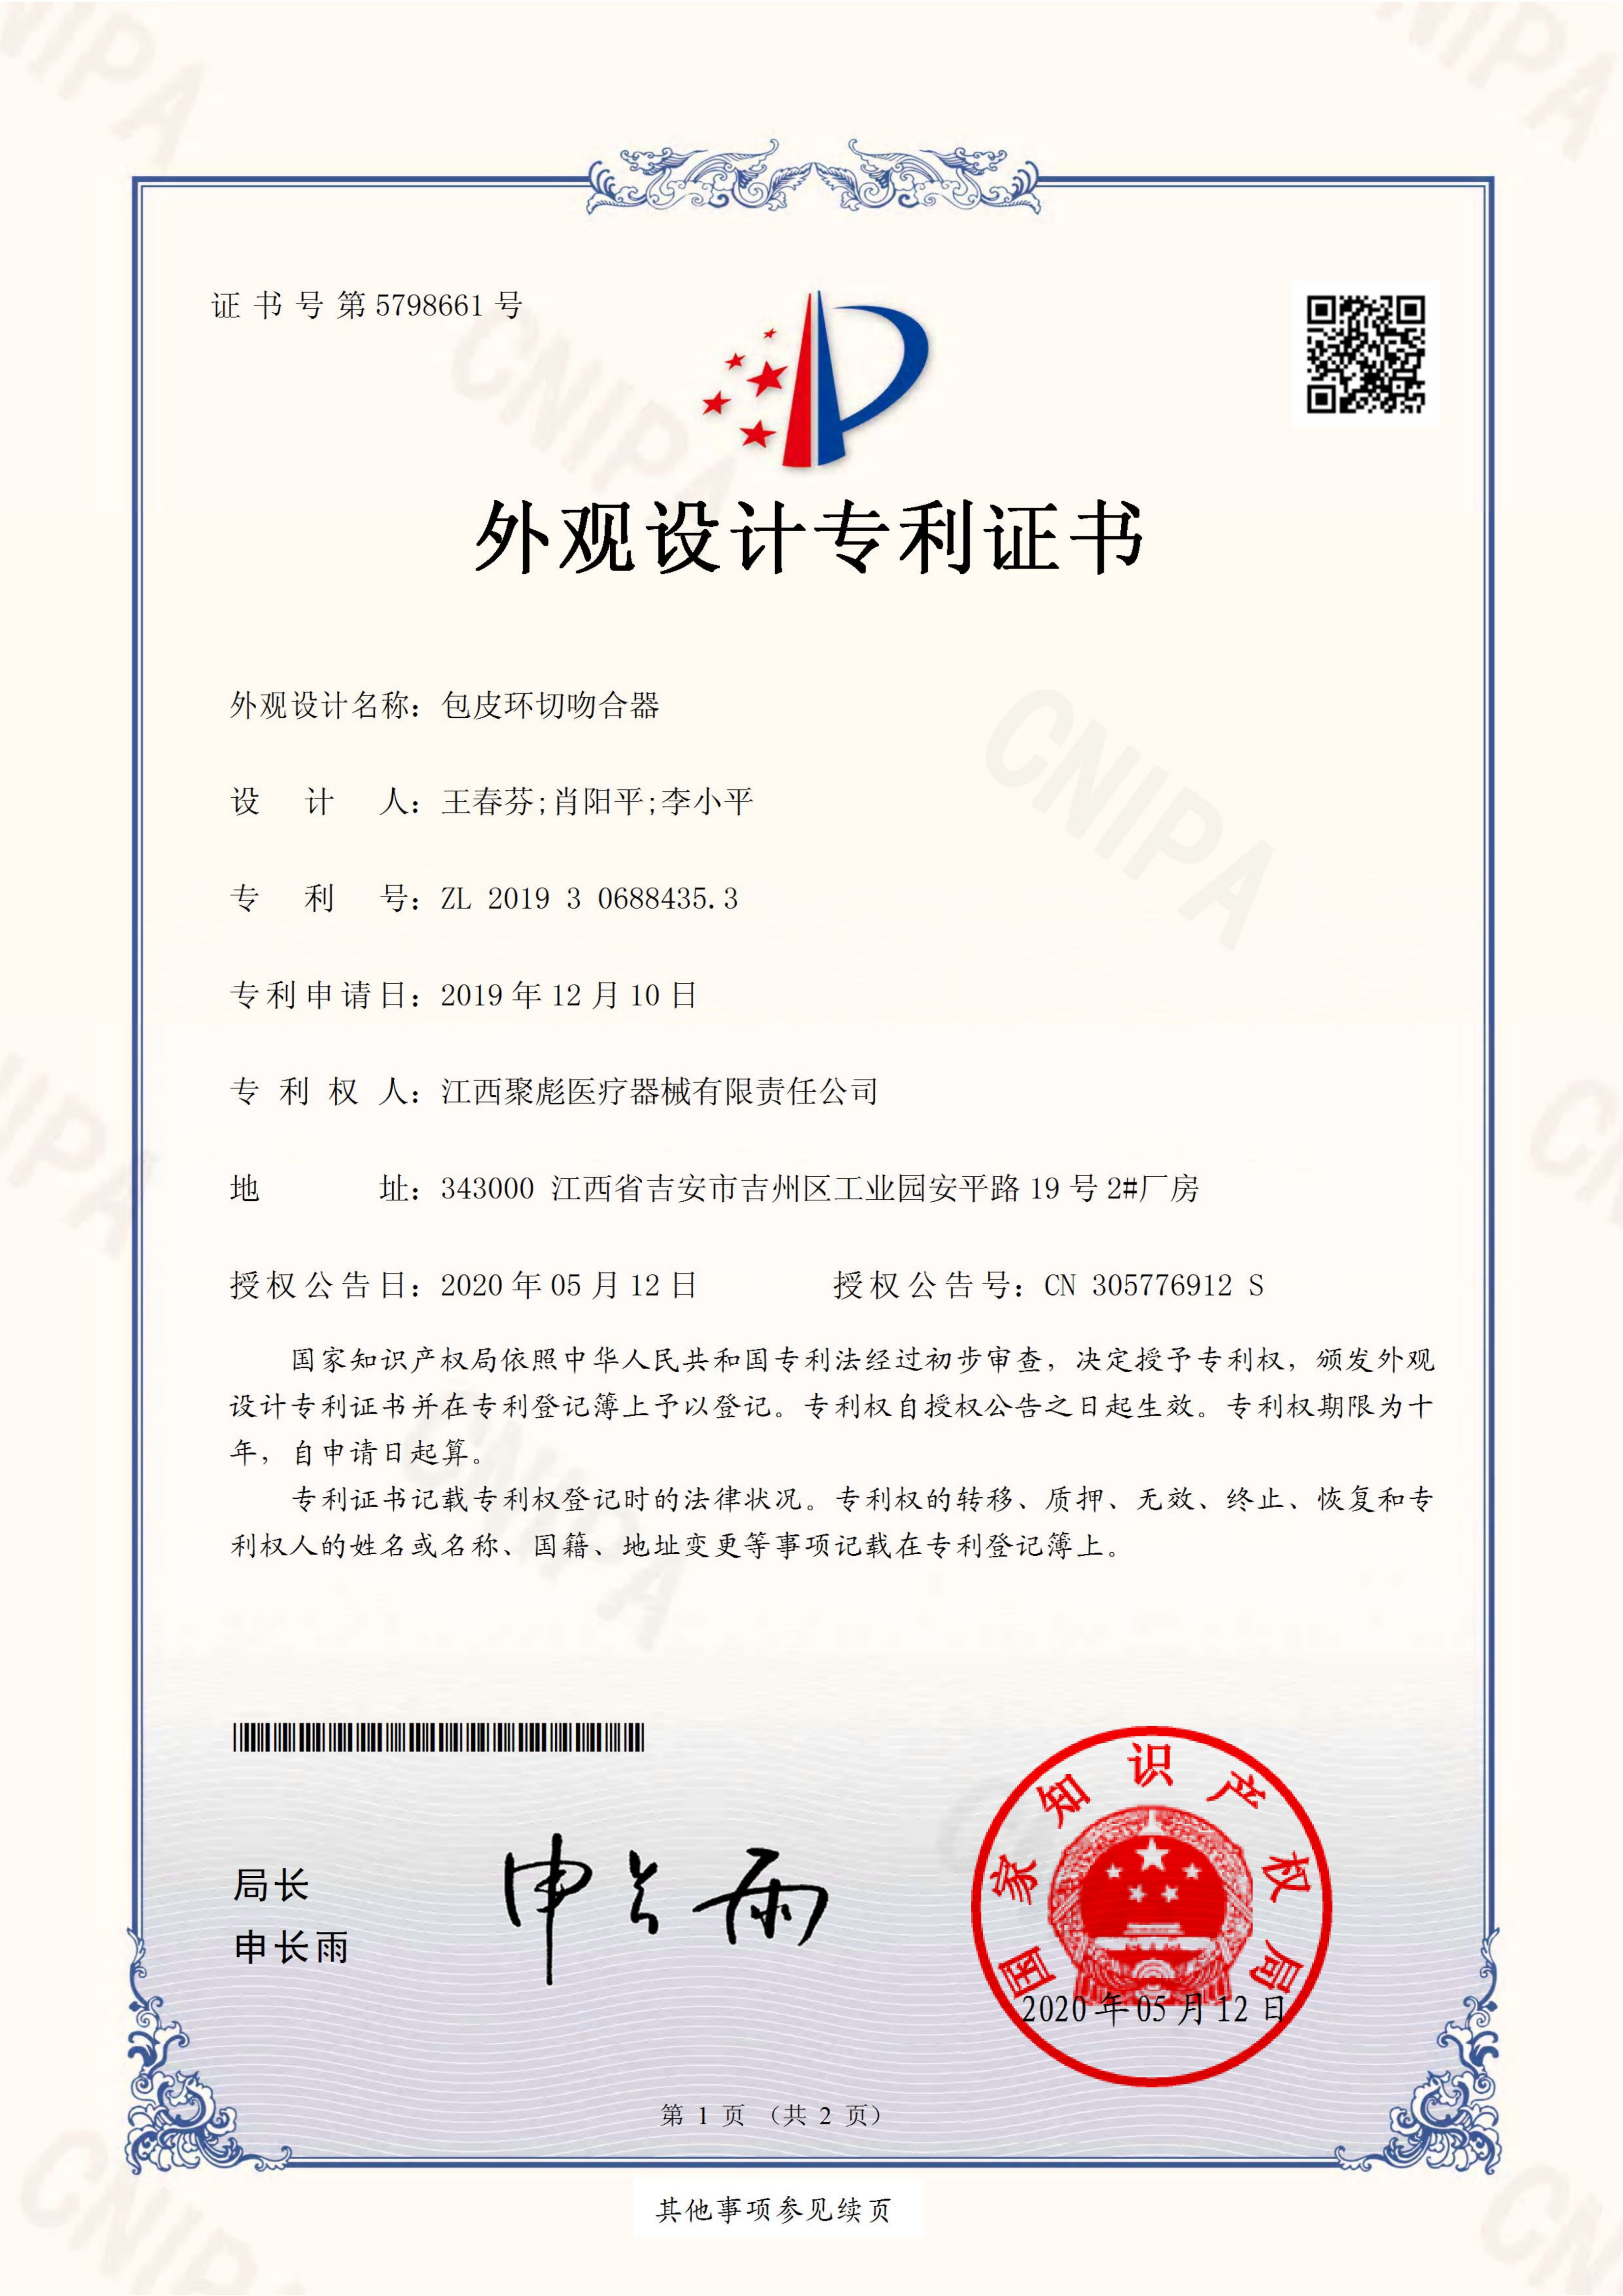 江西聚彪醫療器械有限責任公司2019306884353-外觀設計專利證書(1)_00(1).jpg